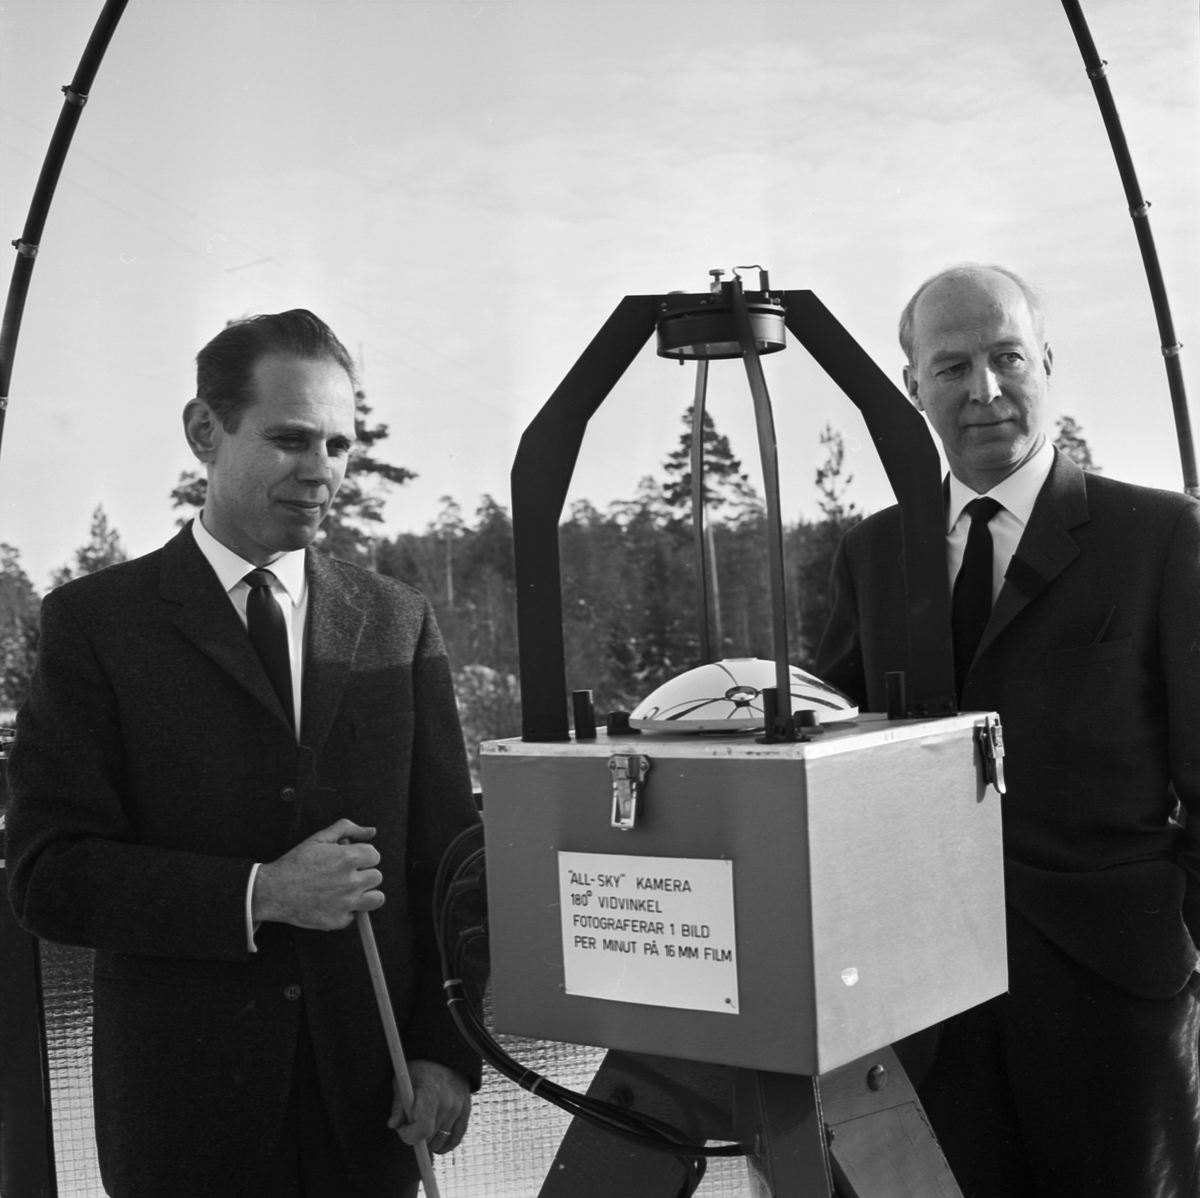 Jonosfärobservatoriet, forskare klara att avfyra Arcas-raketer för jonosfärforskning, Uppsala 1963